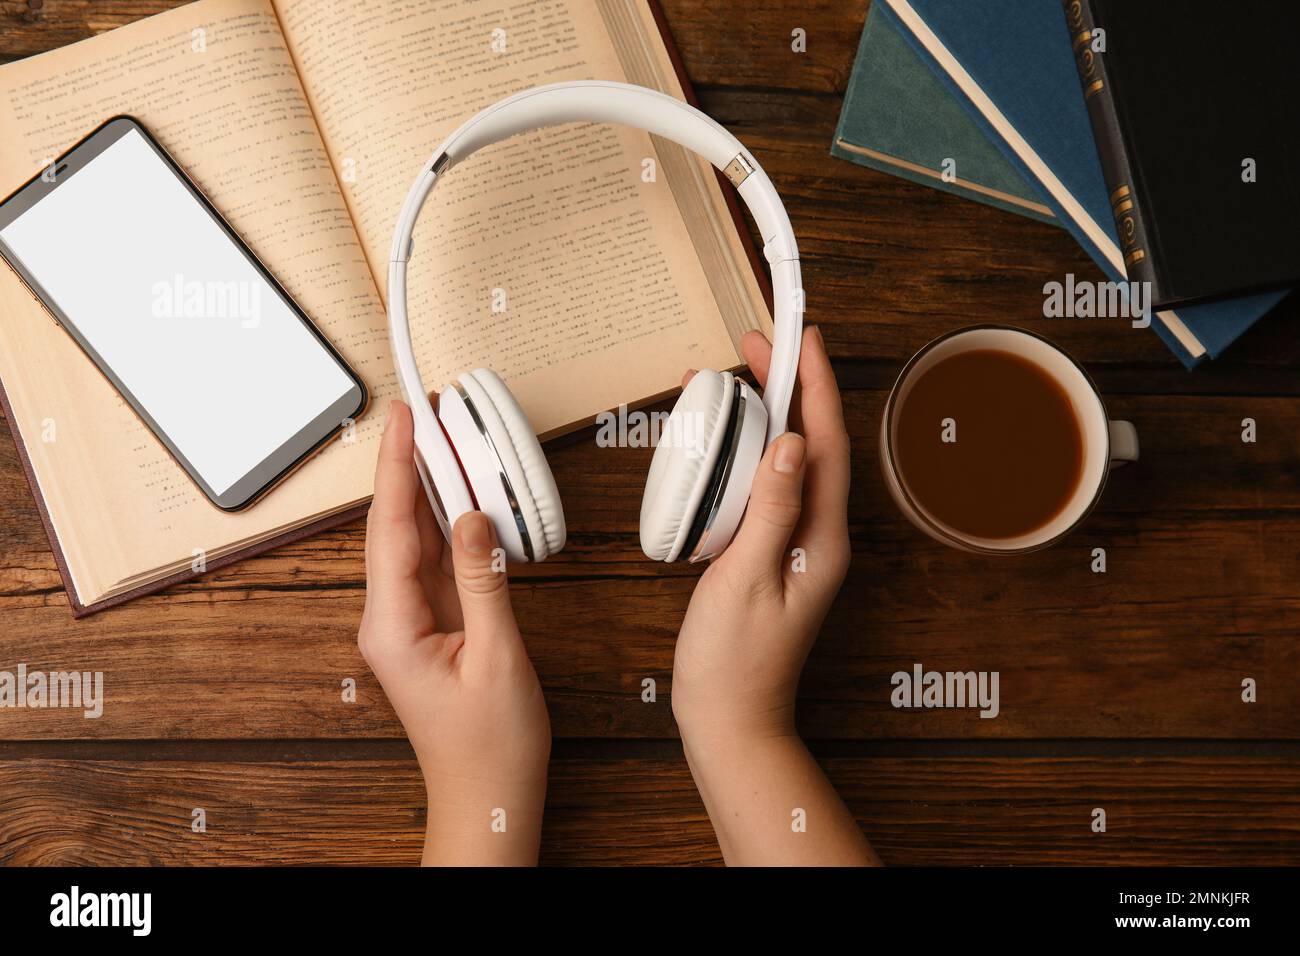 Femme tenant un casque sur une table en bois avec des livres, vue de dessus Banque D'Images